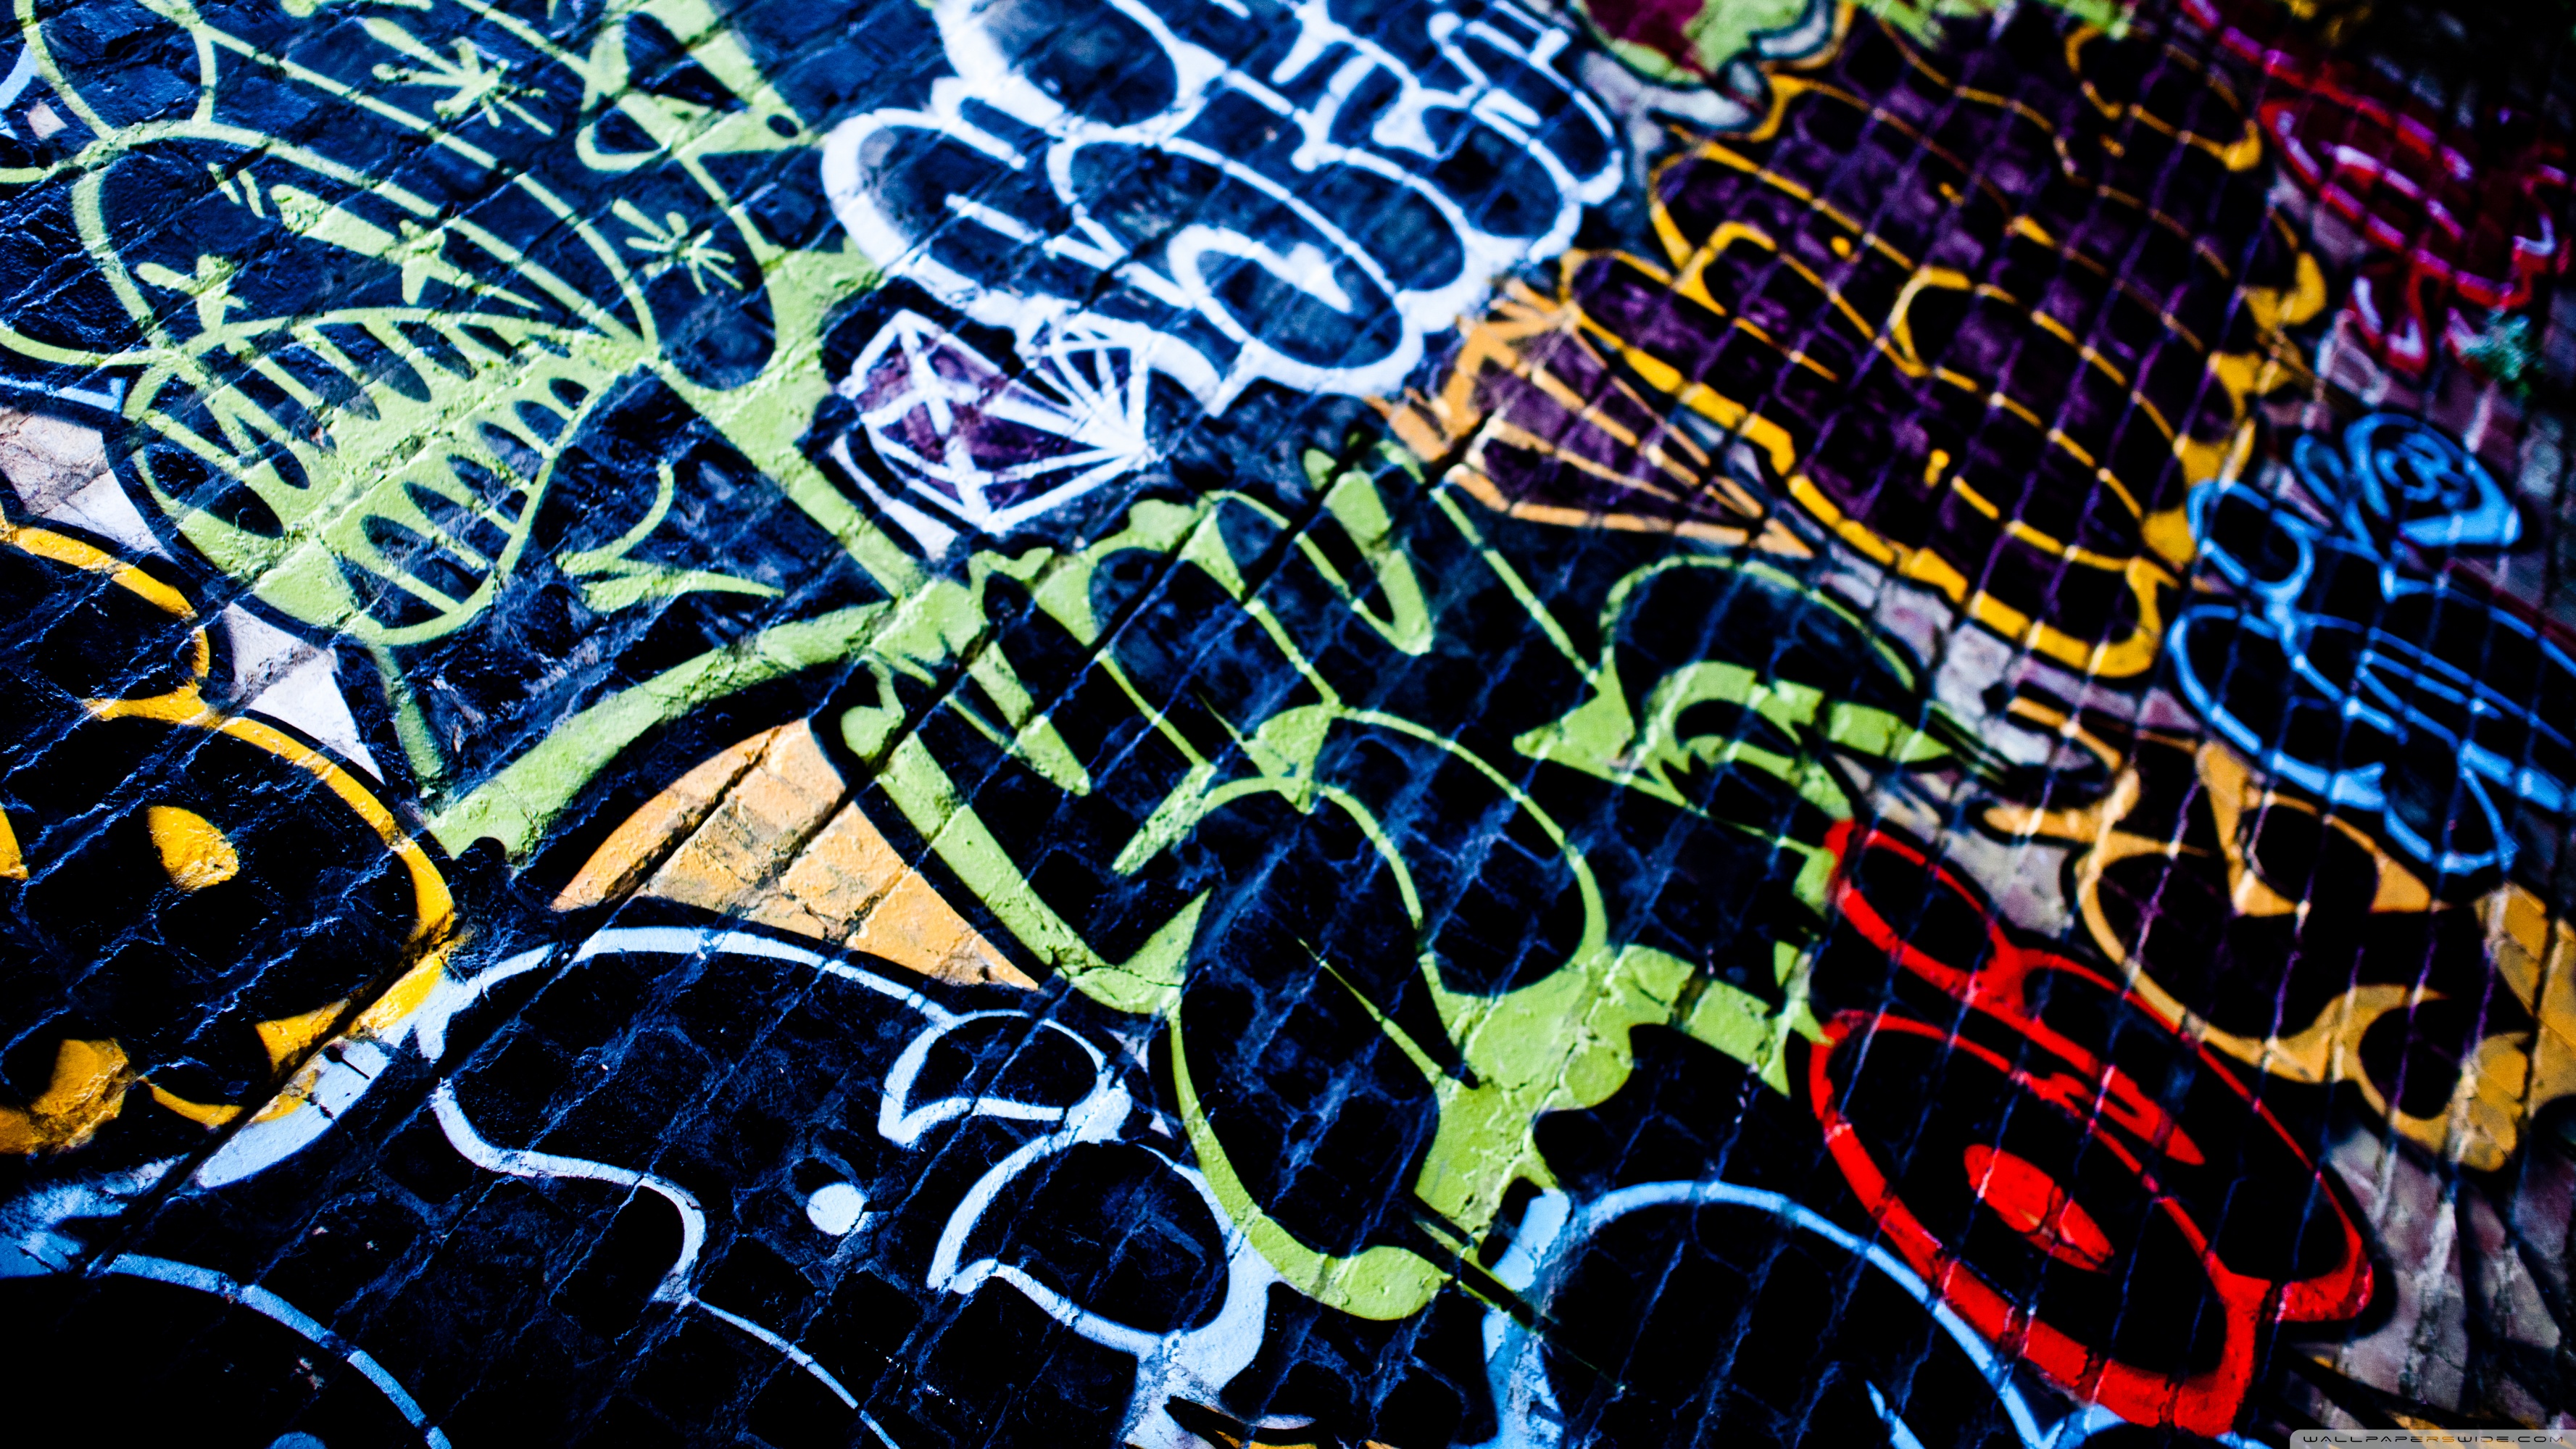 Graffiti Desktop Wallpapers